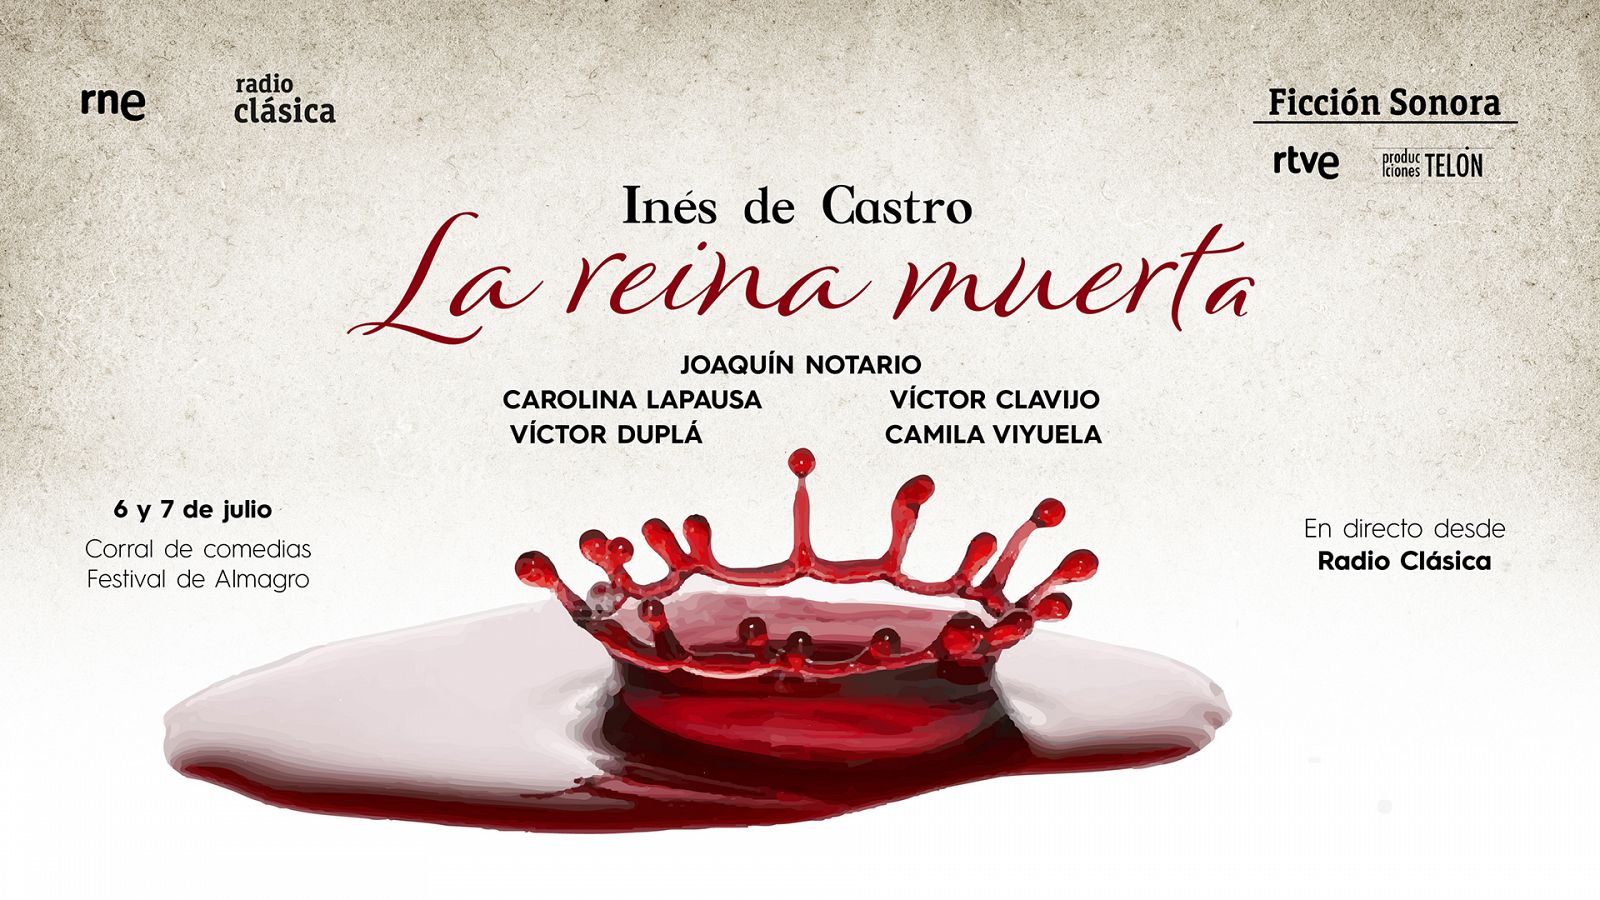 'La reina muerta': la ficci�n sonora que cuenta la historia de In�s de Castro, la reina cad�ver de Portugal